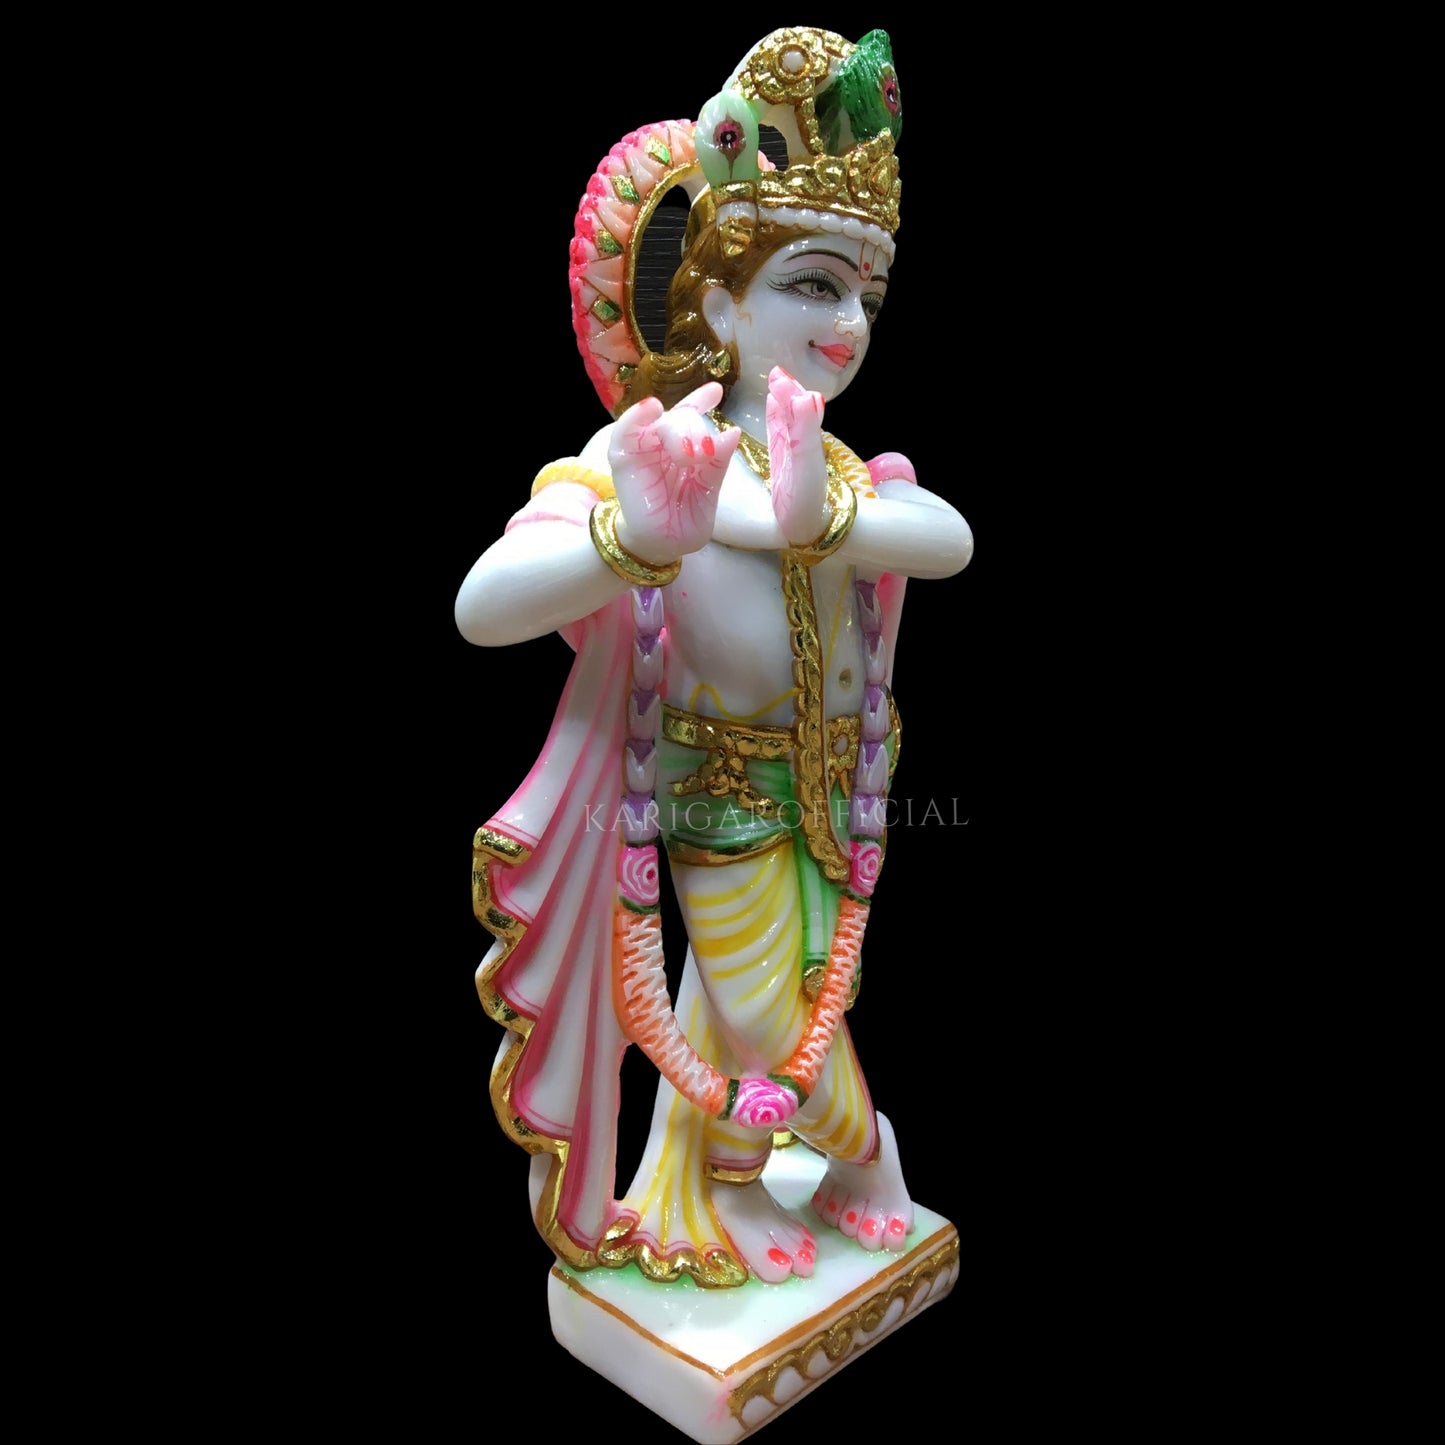 Estatua de Radha Krishna, pareja divina hindú, ídolo de pareja religiosa de mármol grande de 12 pulgadas, decoración del templo del hogar, Radha Krishna Murti pintado a mano, escultura especial para regalos de aniversario de inauguración de la casa